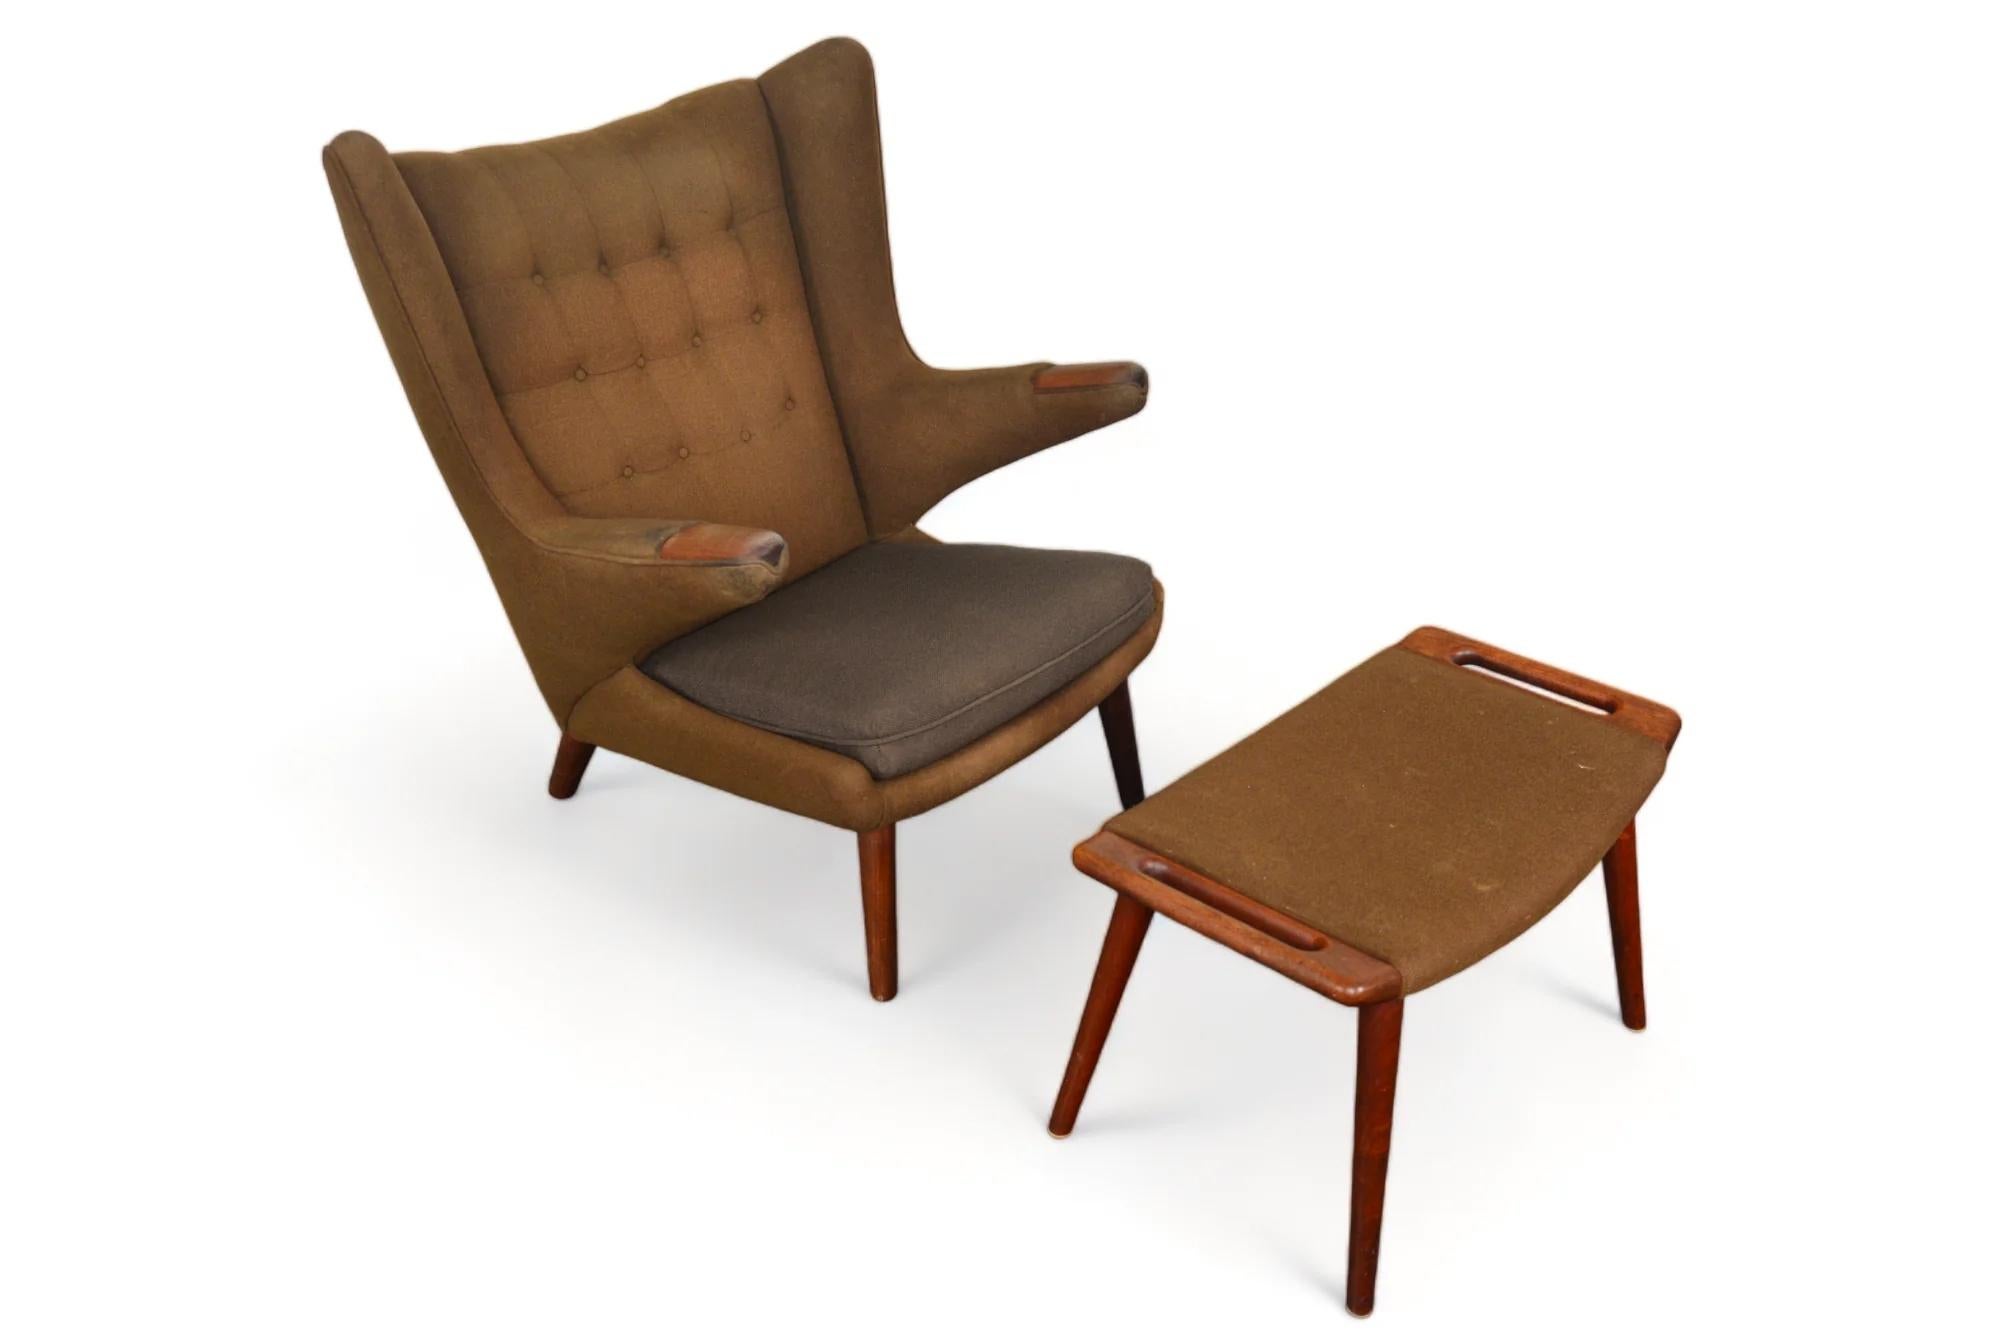 Der 1951 von Hans Wegner für AP Stolen entworfene Papa-Bär-Stuhl ist zu einer Ikone des dänischen Designs geworden.  Er wird hier in unberührtem Zustand zusammen mit der passenden Ottomane (AP29) präsentiert, die vom ursprünglichen Besitzer in den